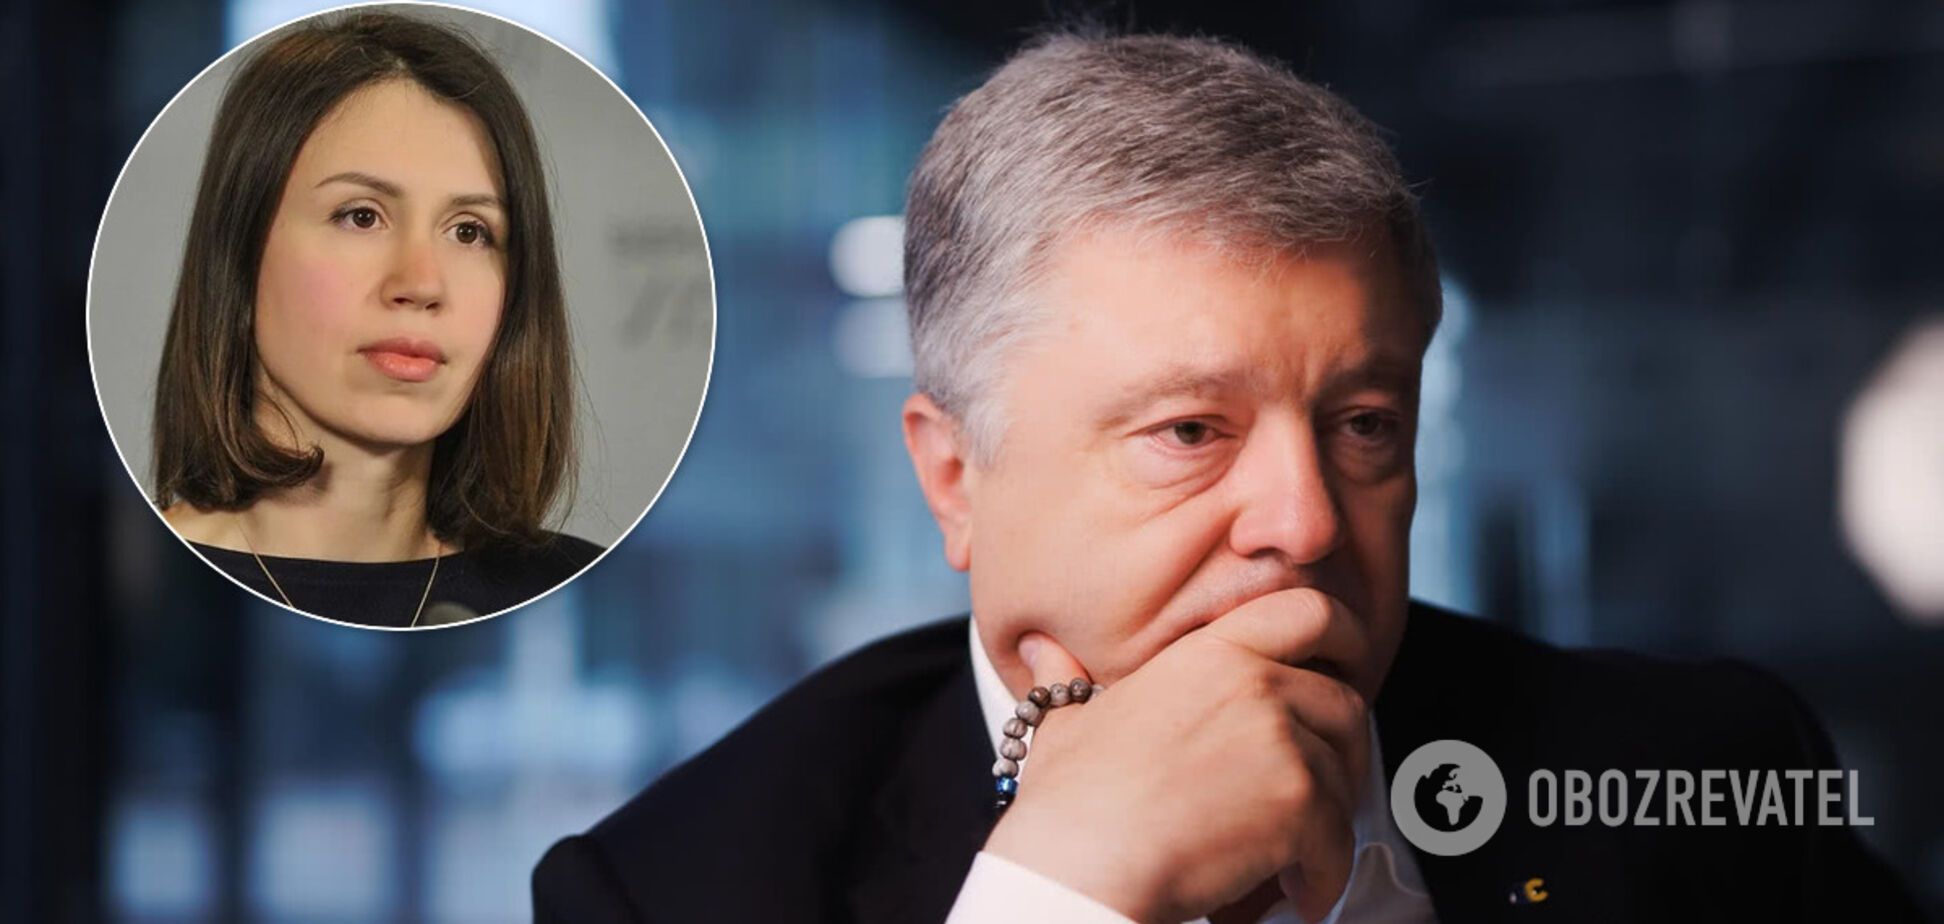 Татьяна Чорновил рассказала интересные факты о 'дела Порошенко'